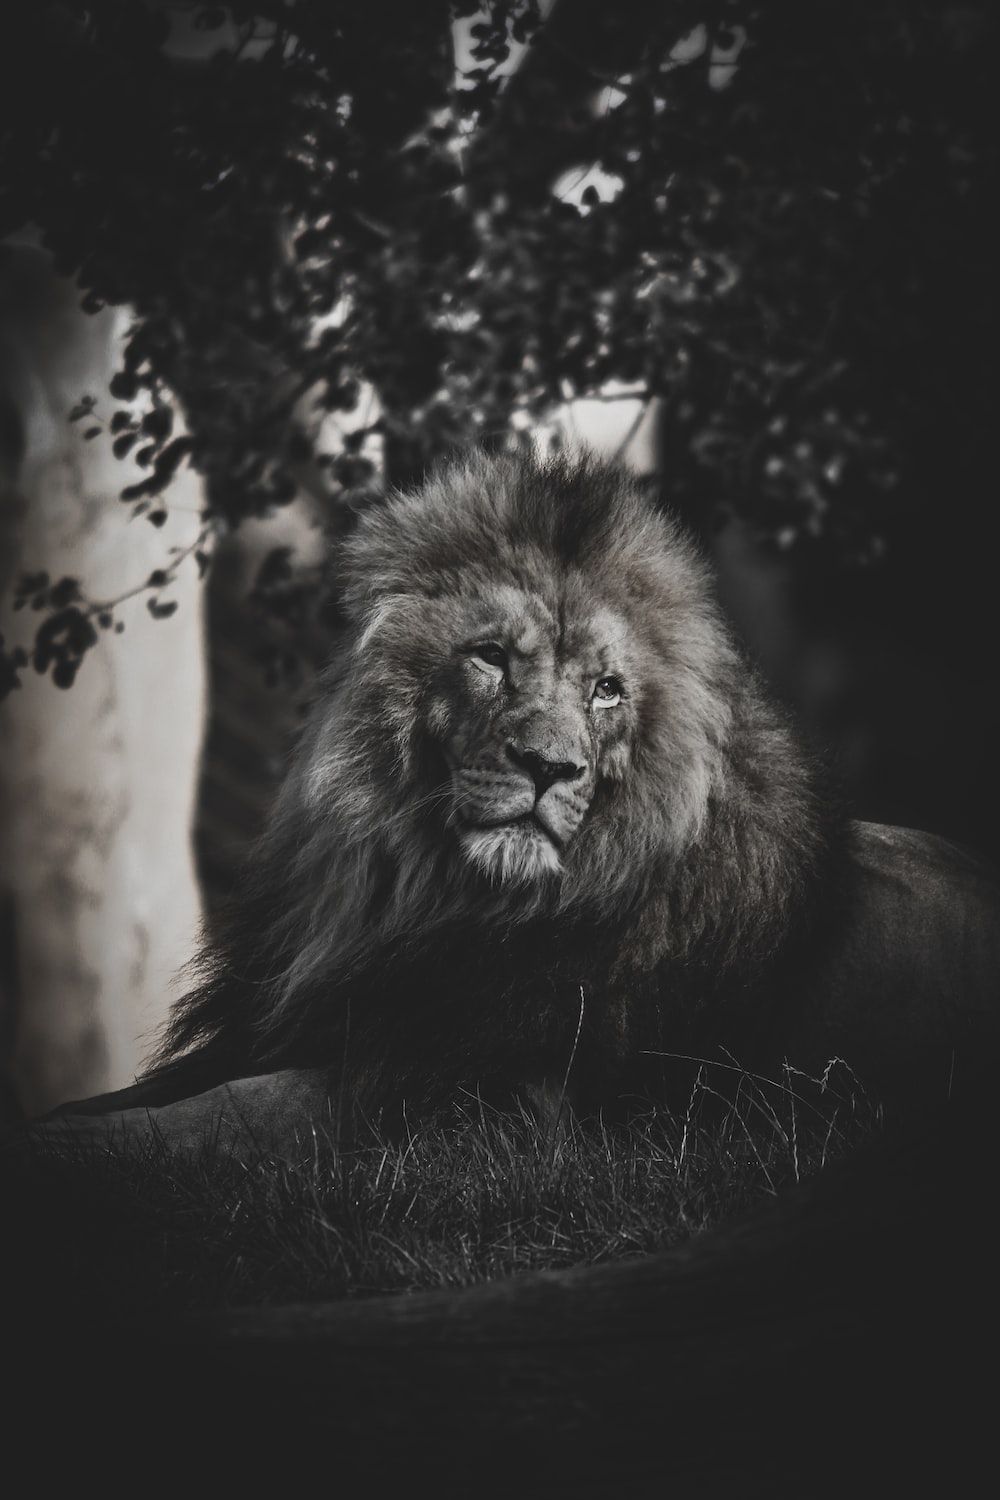  Lowe Schwarz Weiß Hintergrundbild 1000x1500. Foto Zum Thema Ein Schwarz Weiß Foto Eines Löwen